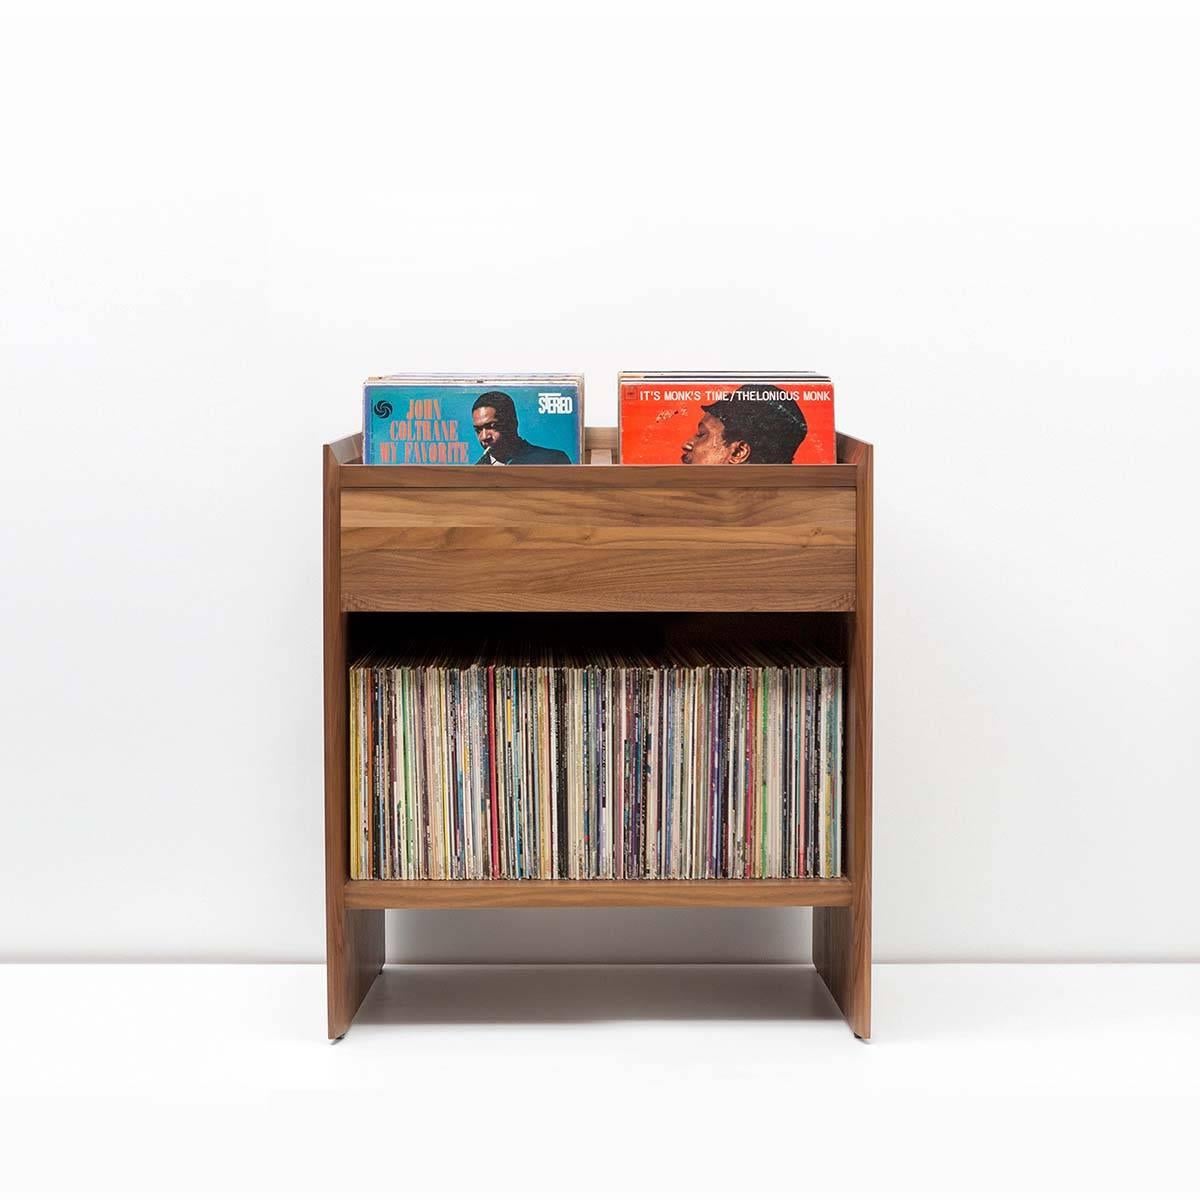 Der Unison Vinyl Record Storage Cabinet ist die perfekte Lösung für die Aufbewahrung von Vinyl-Schallplatten. Er ist aber auch eine großartige Ergänzung zu jedem Unison Record Stand und bietet zusätzlichen Stauraum für Ihre wachsende